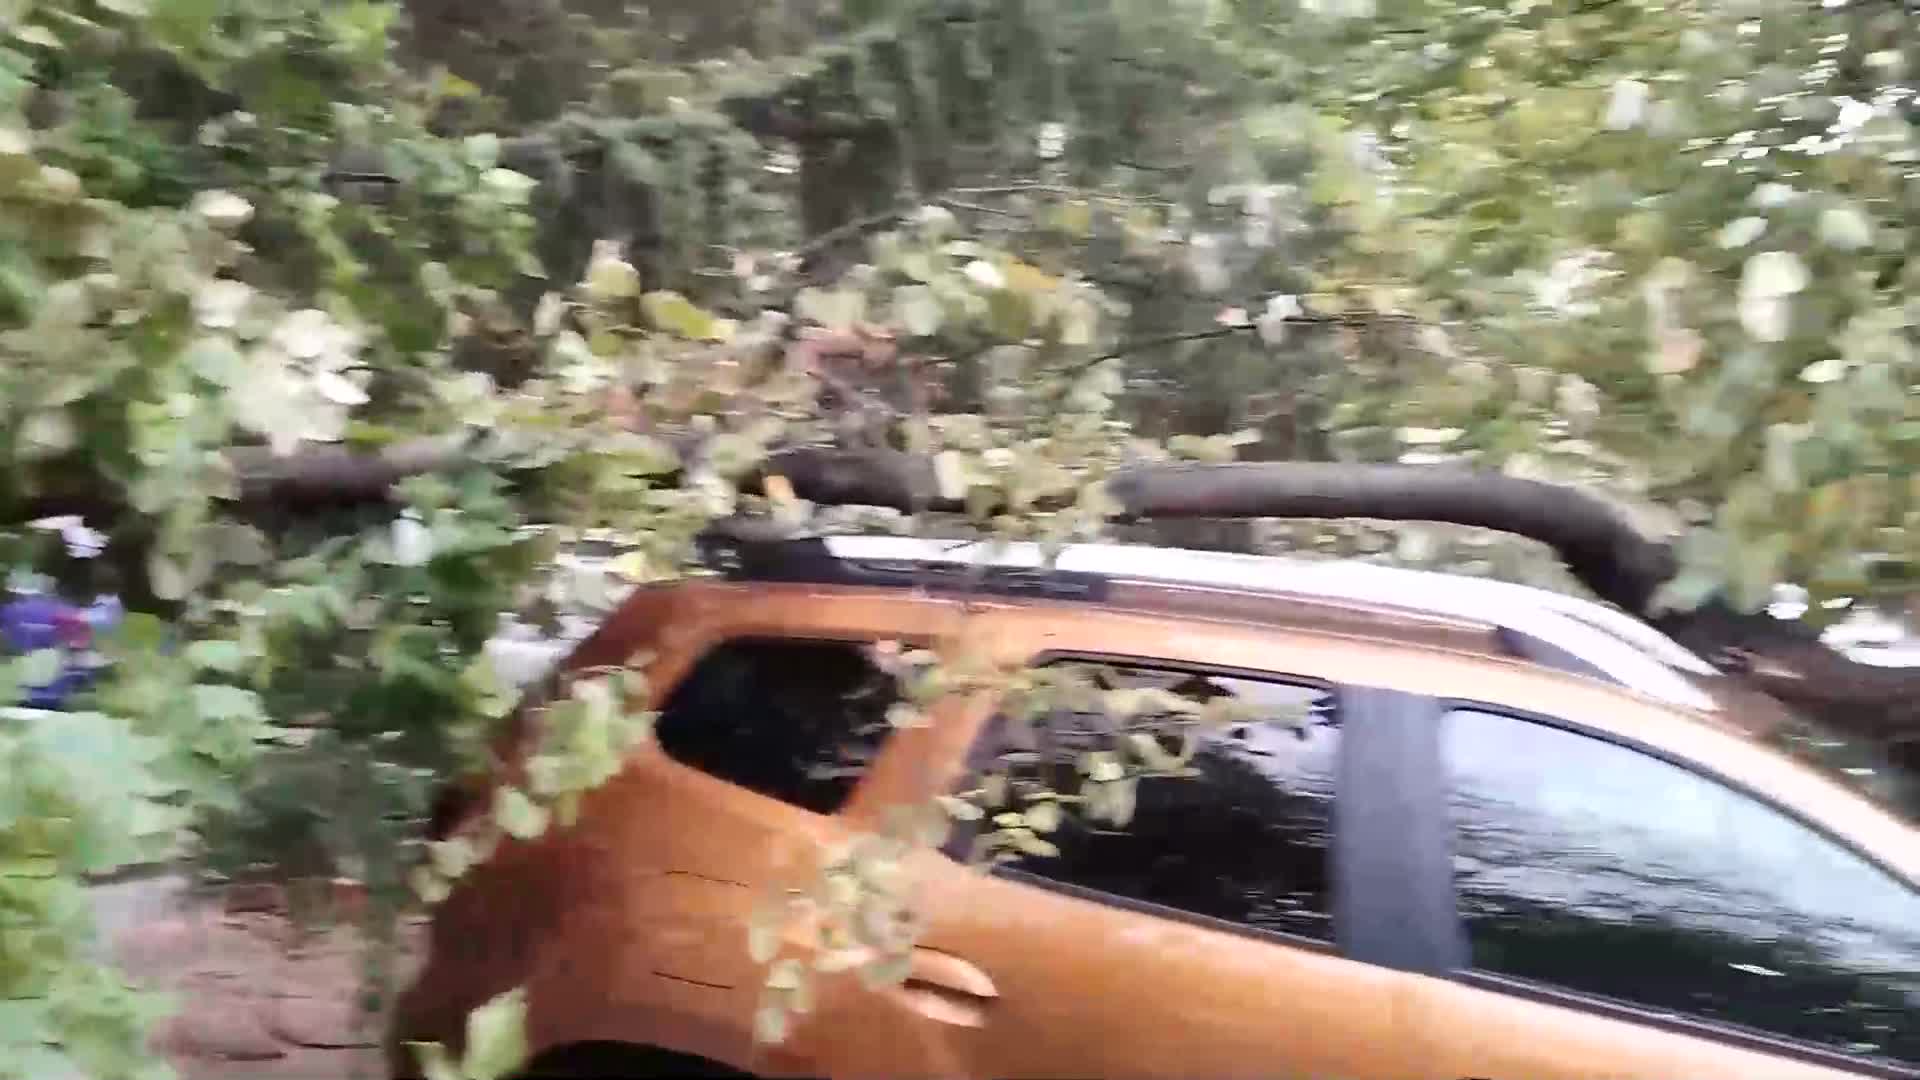 Дърво падна върху лек автомобил в Стара Загора